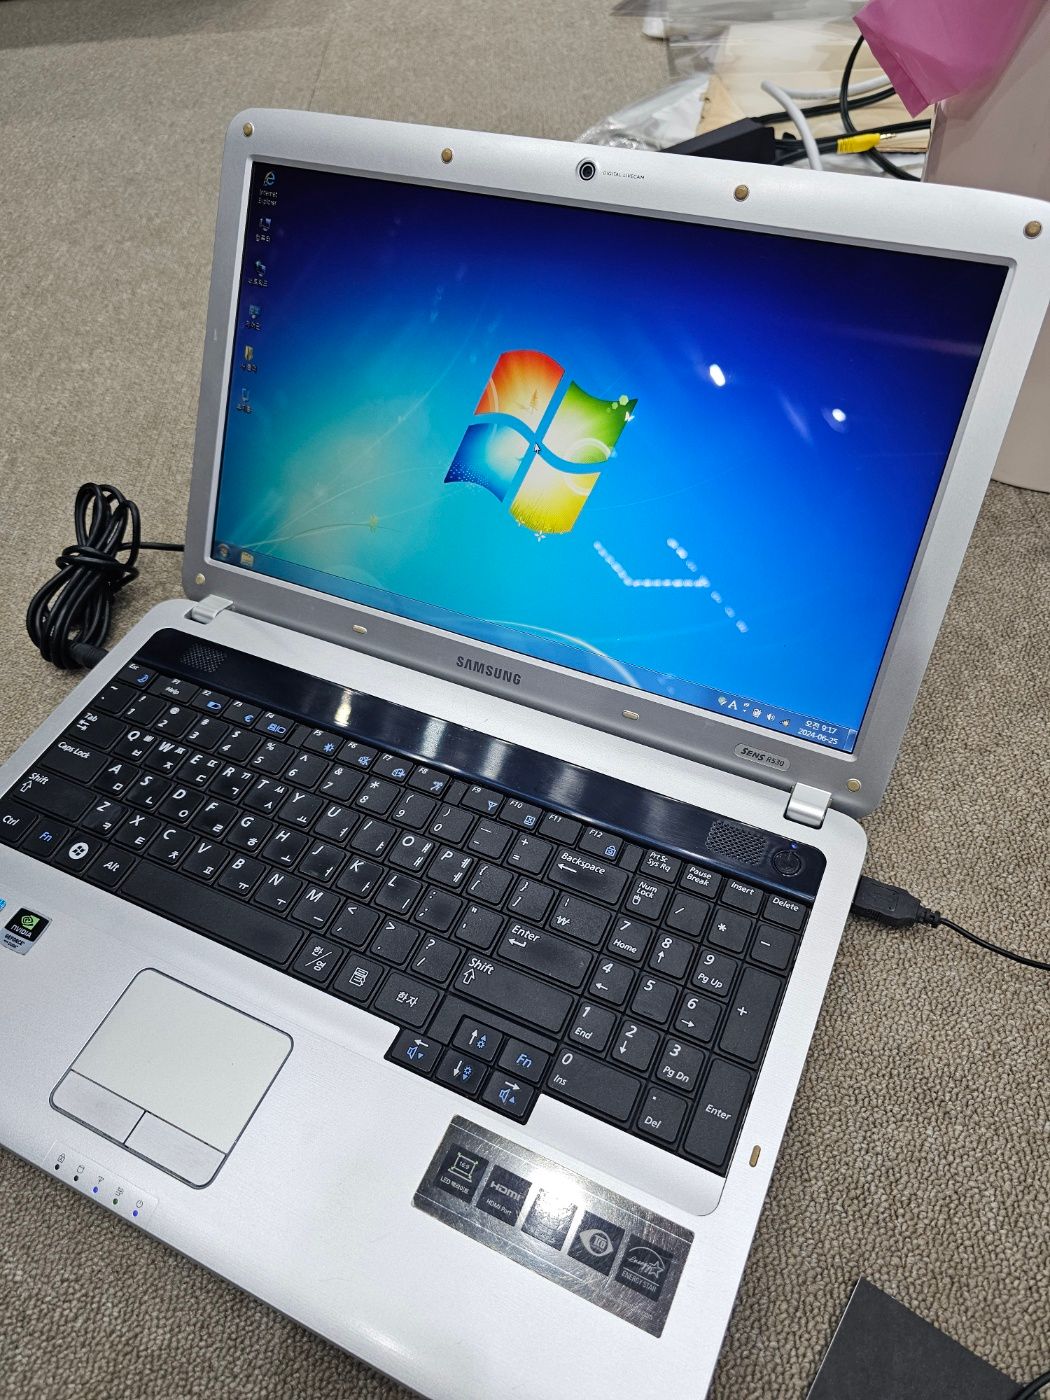 삼성 R530 구형 노트북 부품용 무료배송